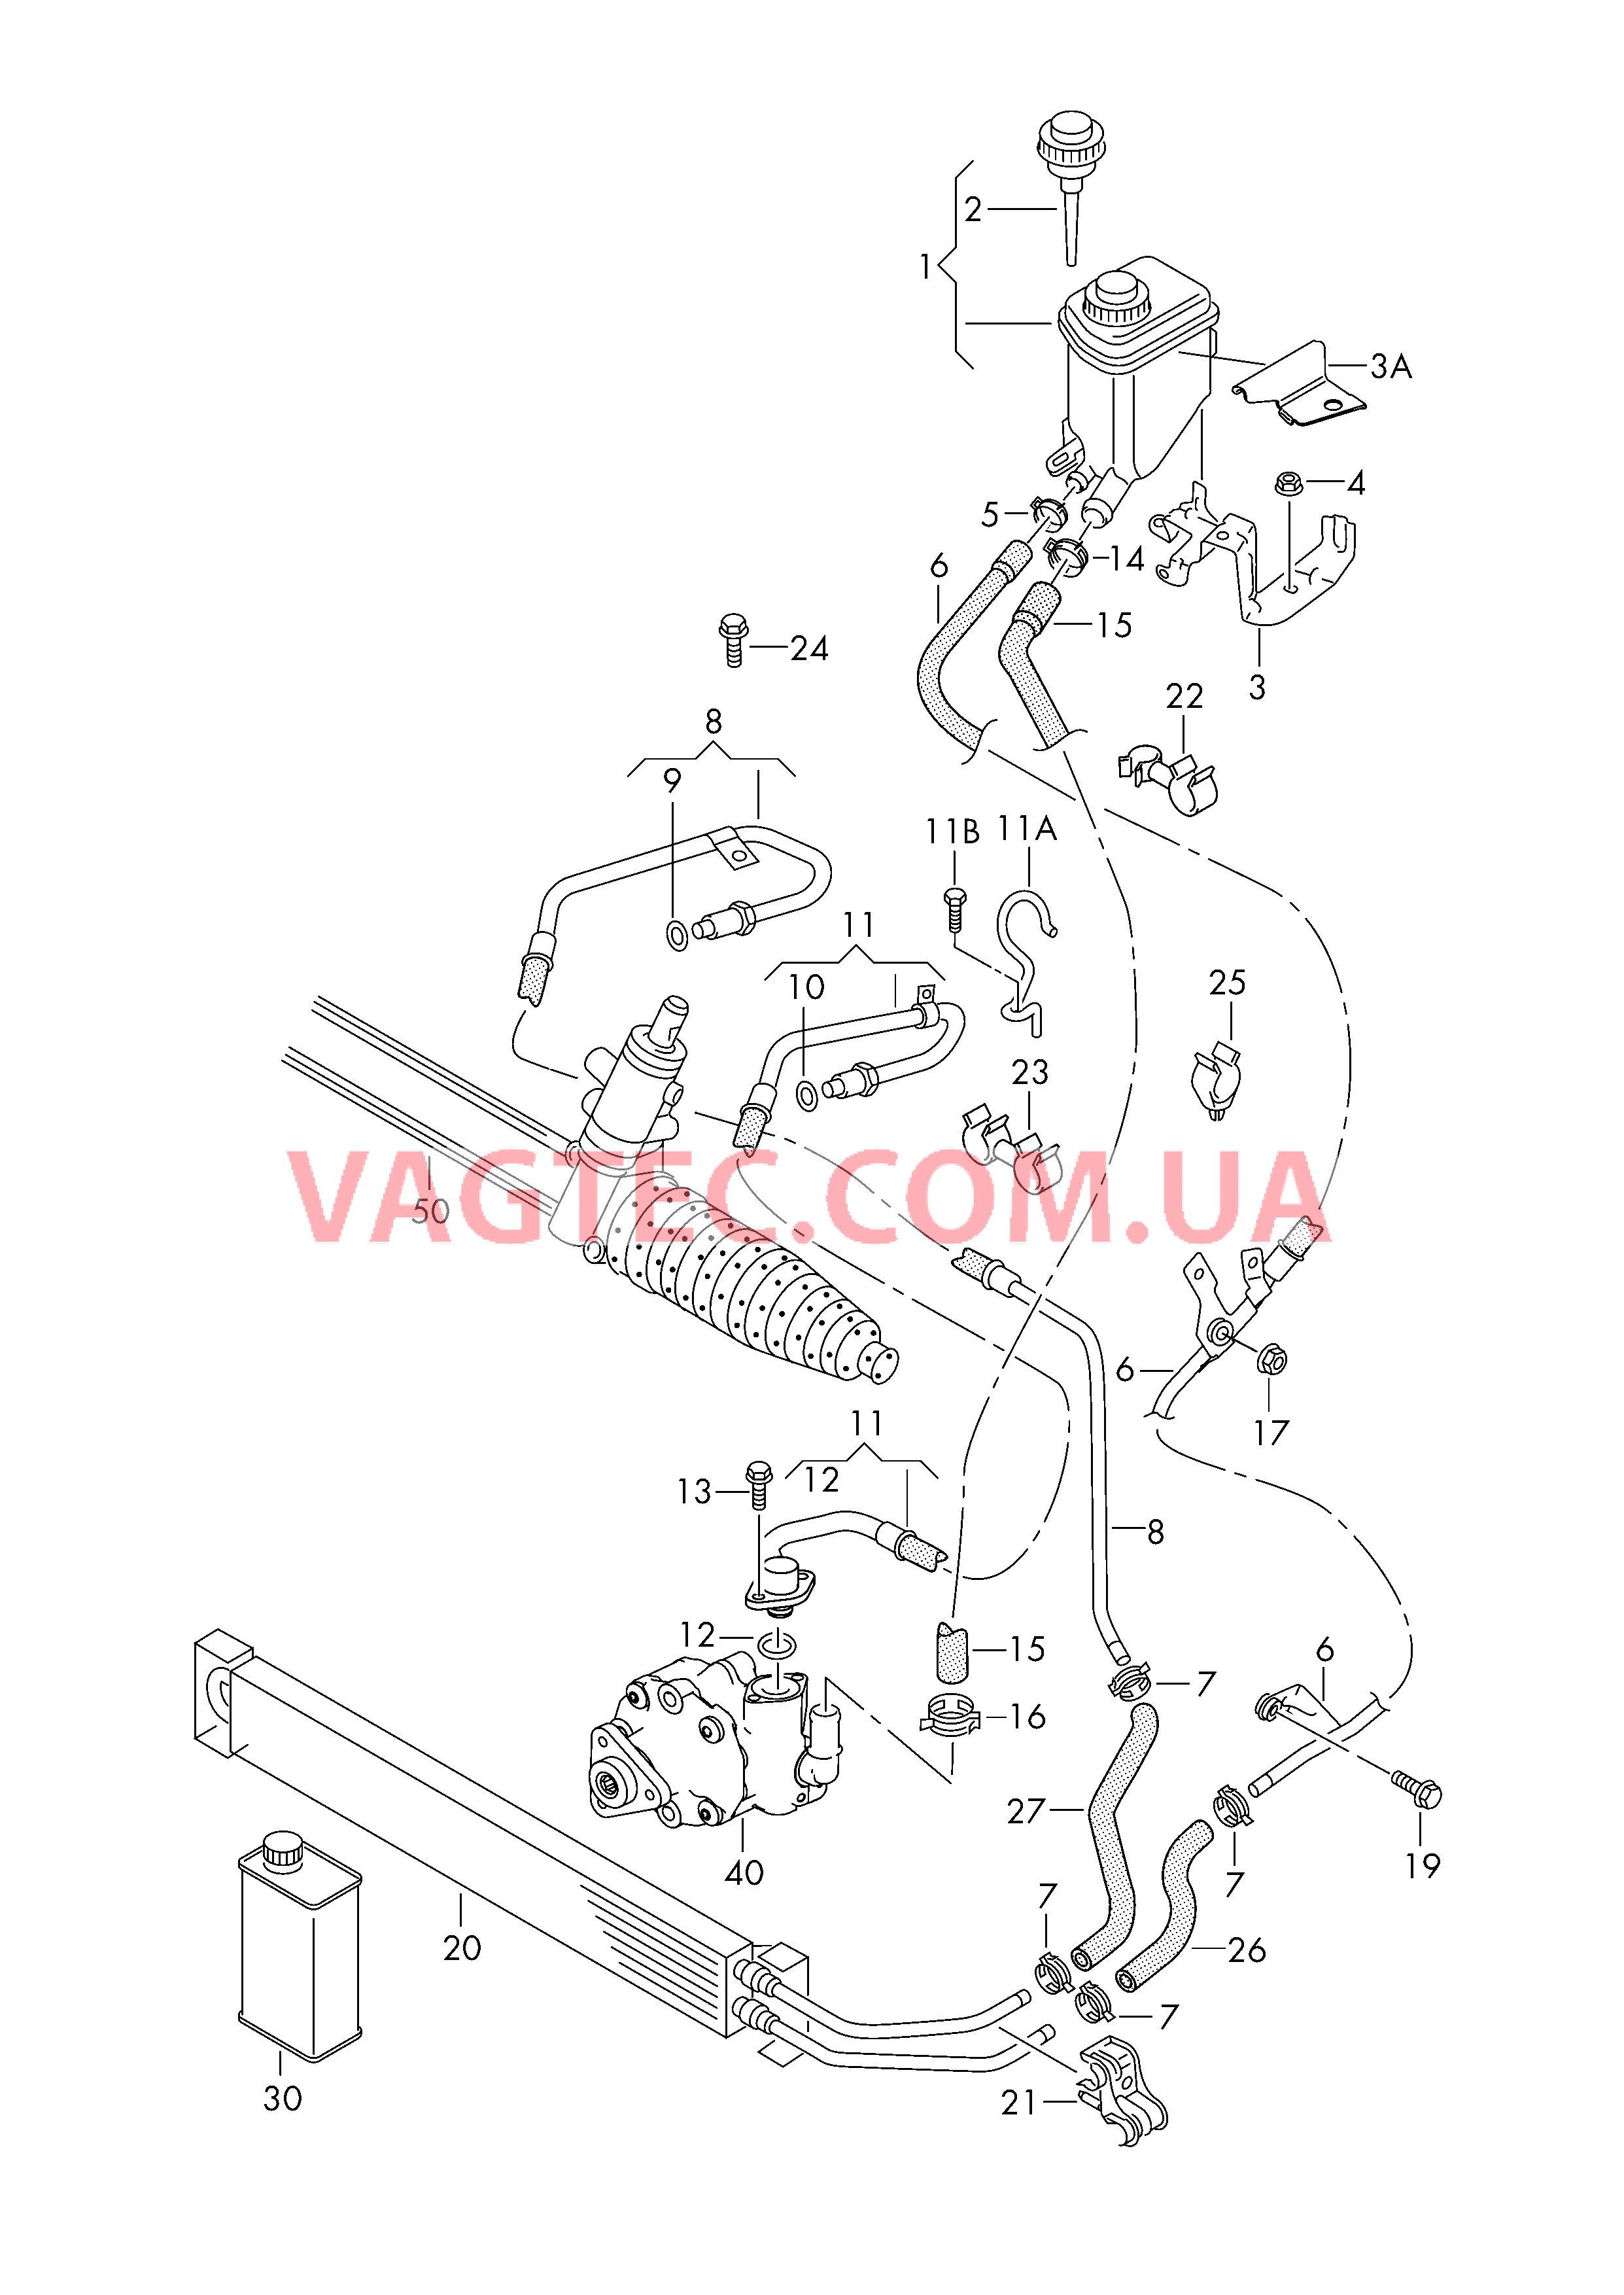 Масляный бачок с соединительными деталями, шлангами  для ГУРа  для VOLKSWAGEN Touareg 2016